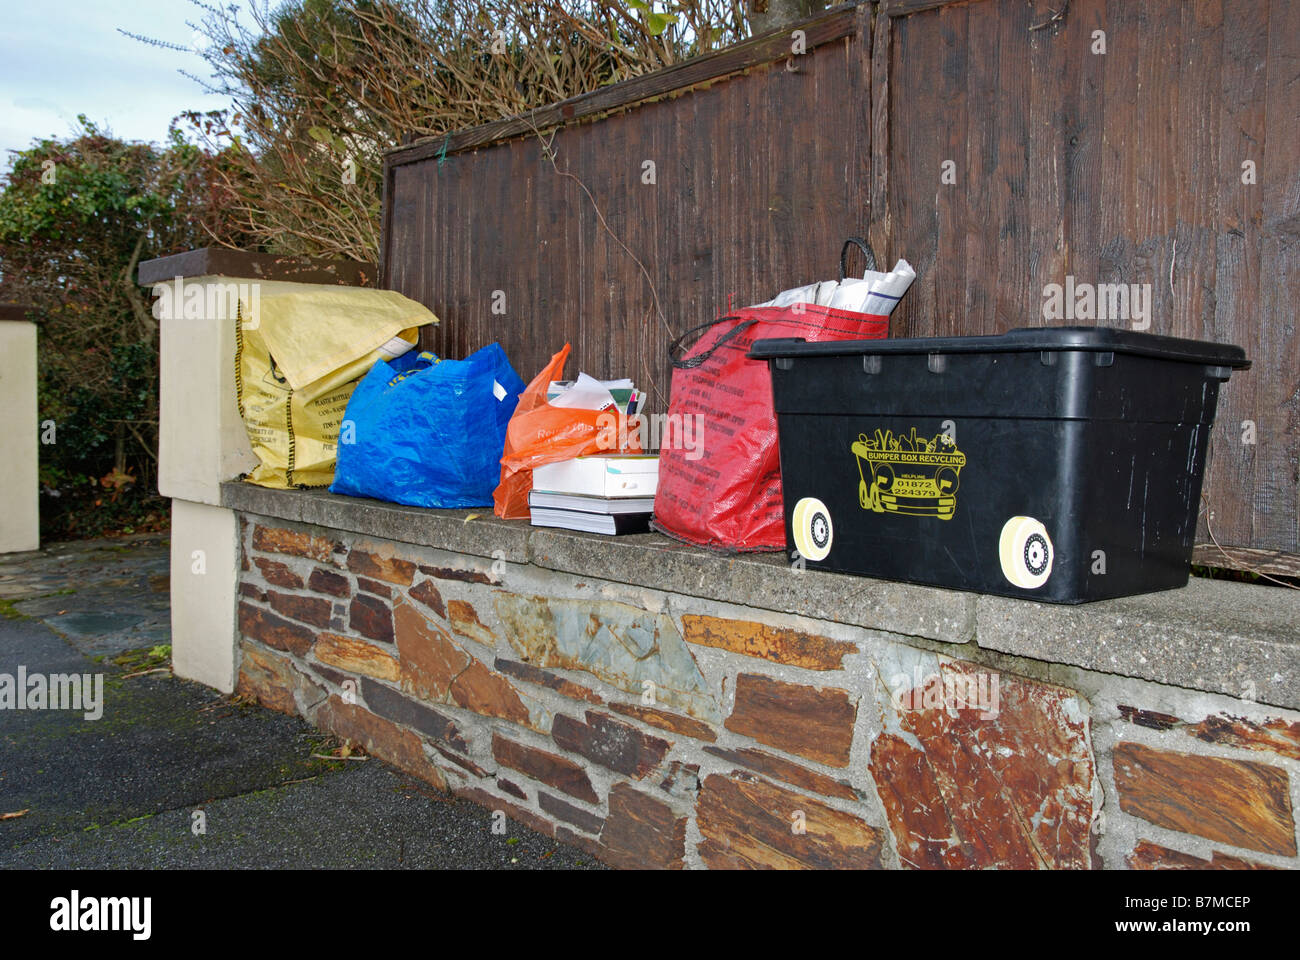 Le recyclage des sacs et cartons pleins et en attente d'être recueillis par le conseil local à Truro, Cornwall, uk Banque D'Images